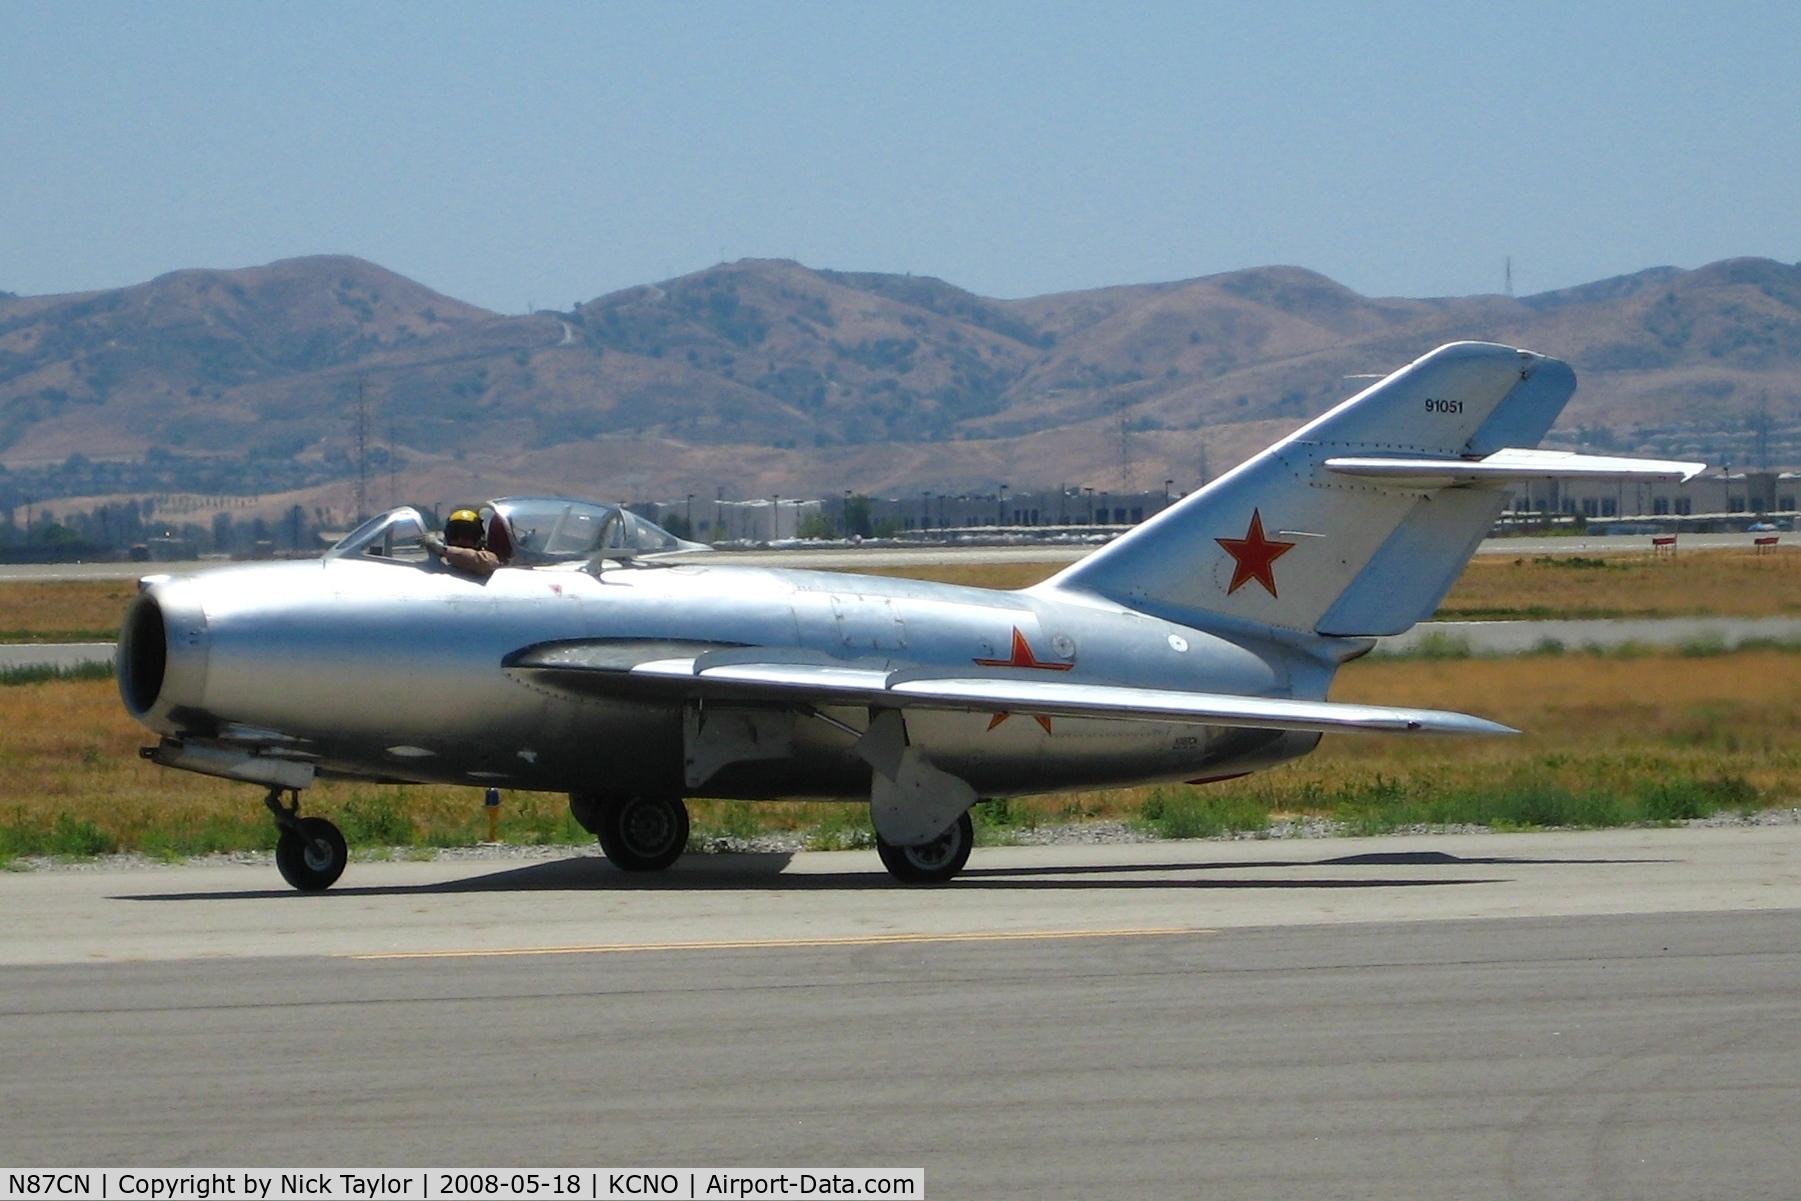 N87CN, Mikoyan-Gurevich MiG-15 C/N 910-51, Chino Air Show 08